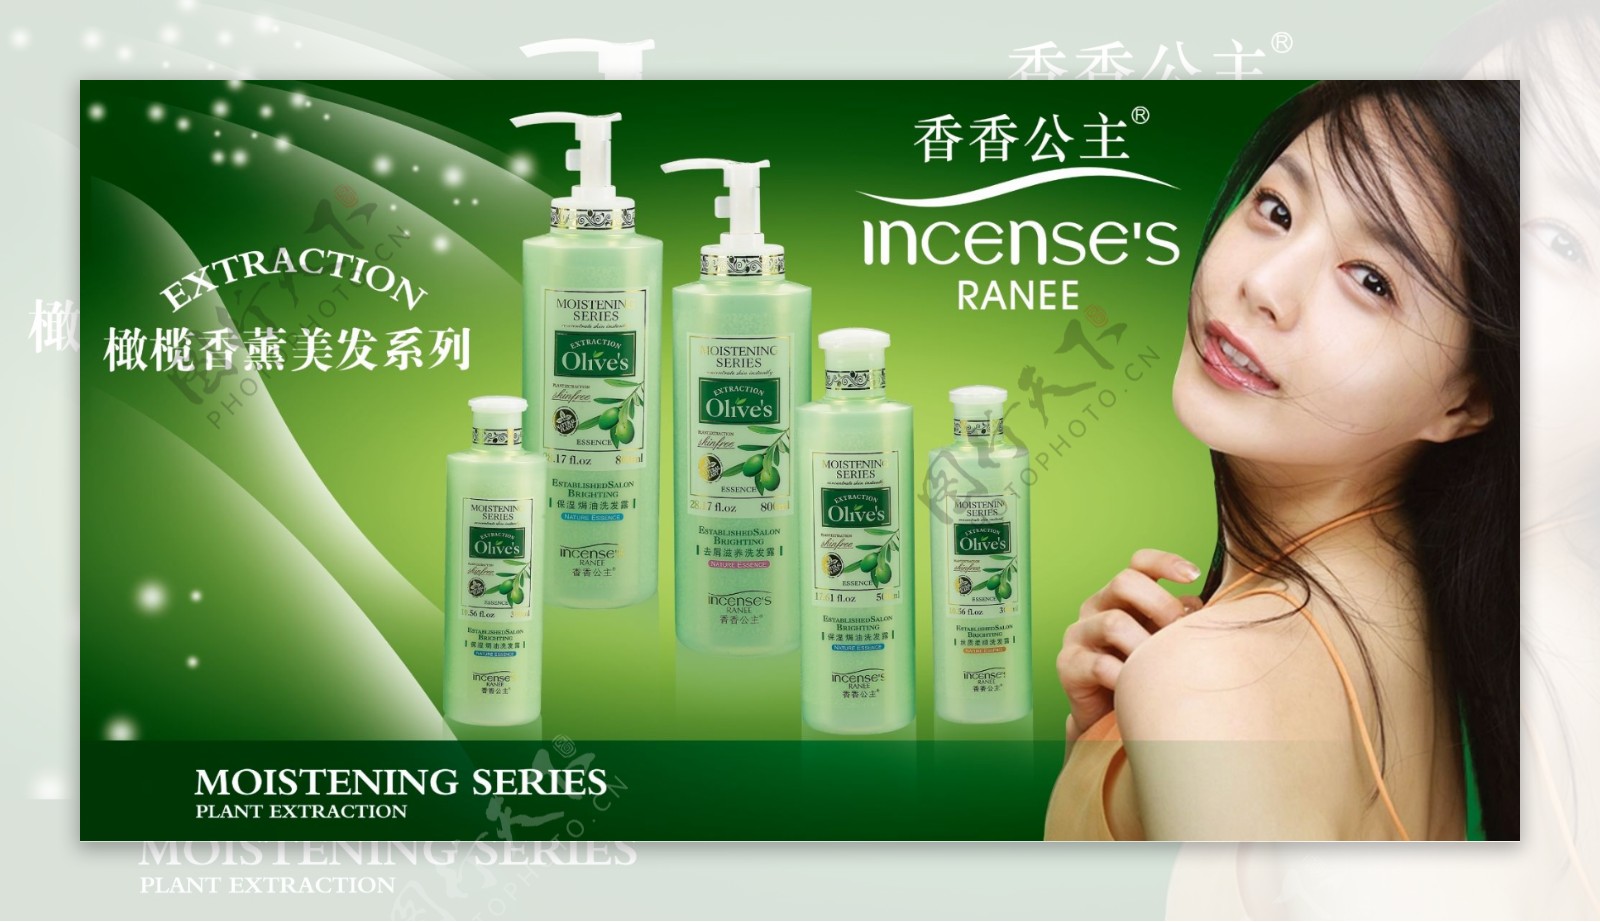 香香公主洗发水广告